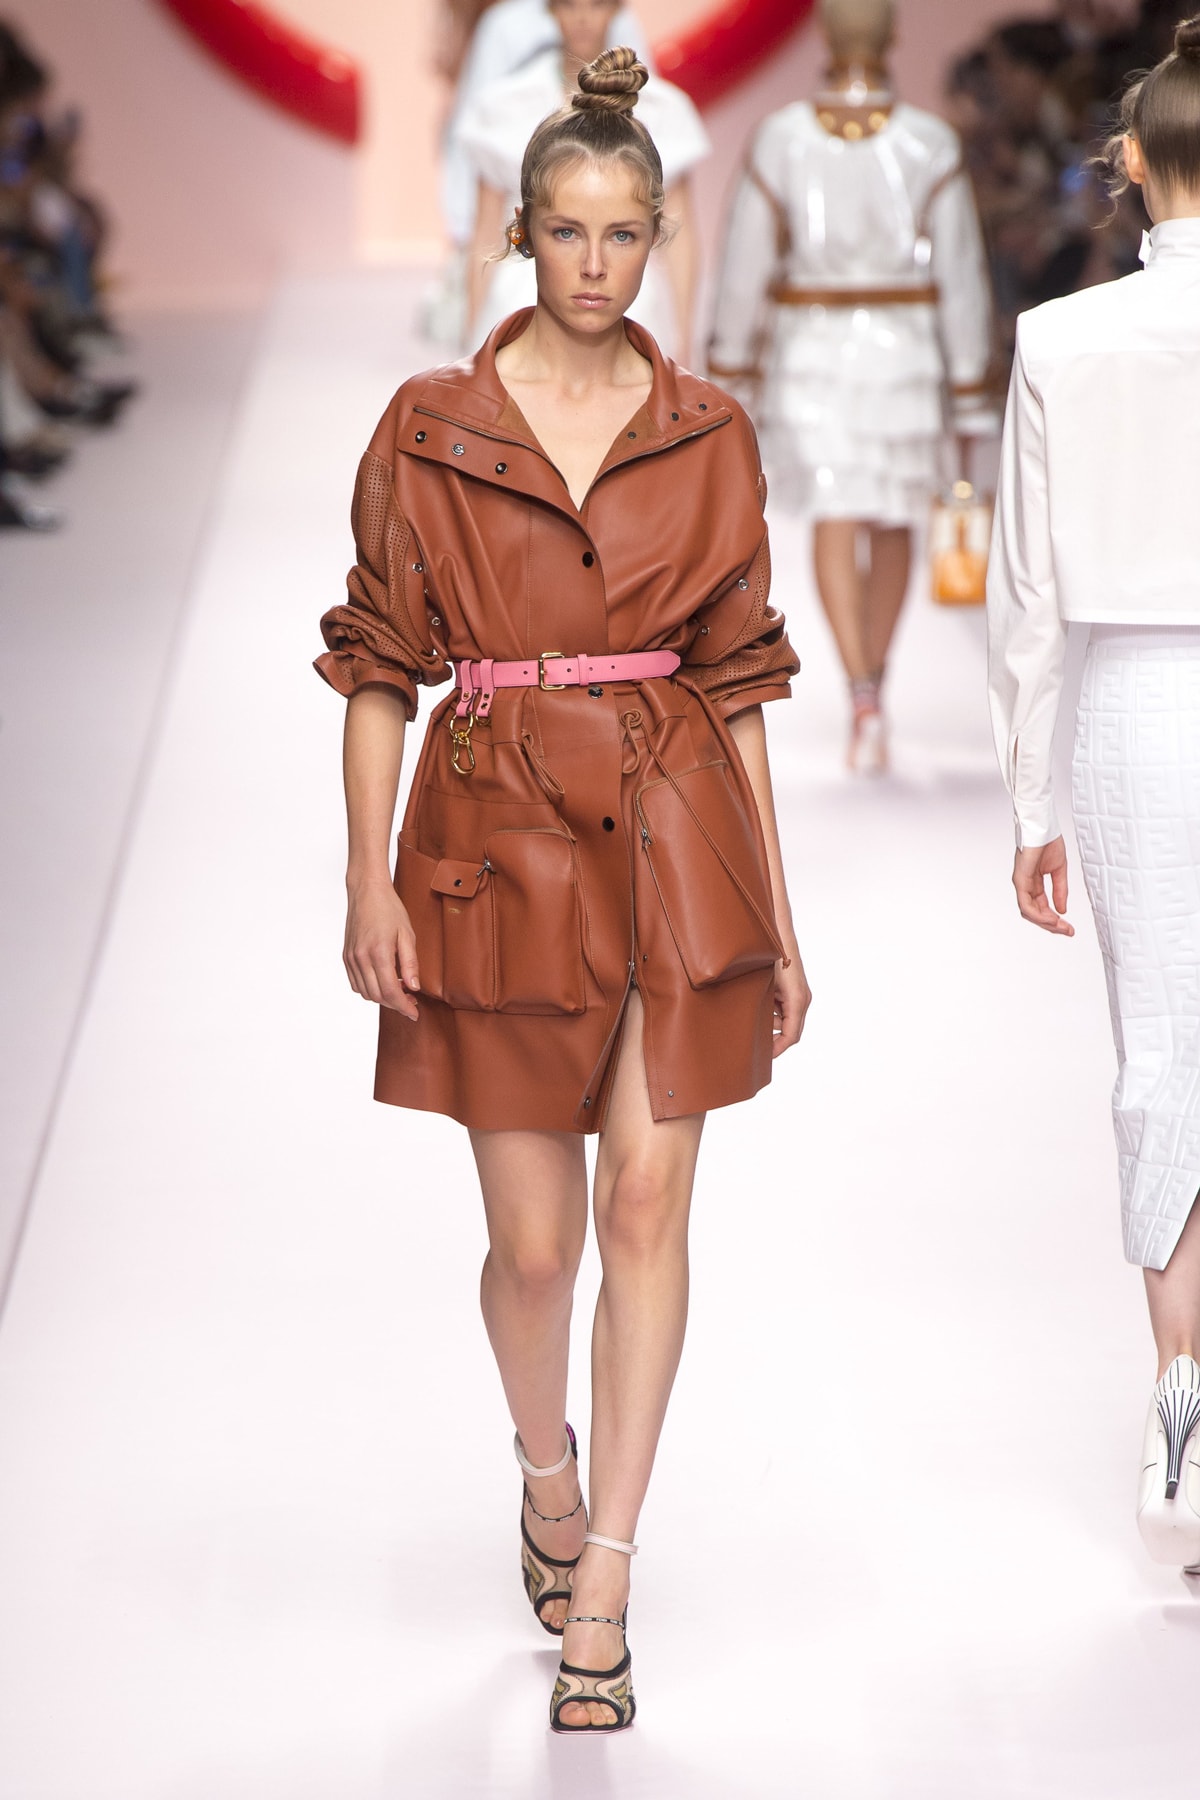 Fendi Karl Lagerfeld Spring Summer 2019 Milan Fashion Week Show Collection Jacket Shorts Brown Belt Pink